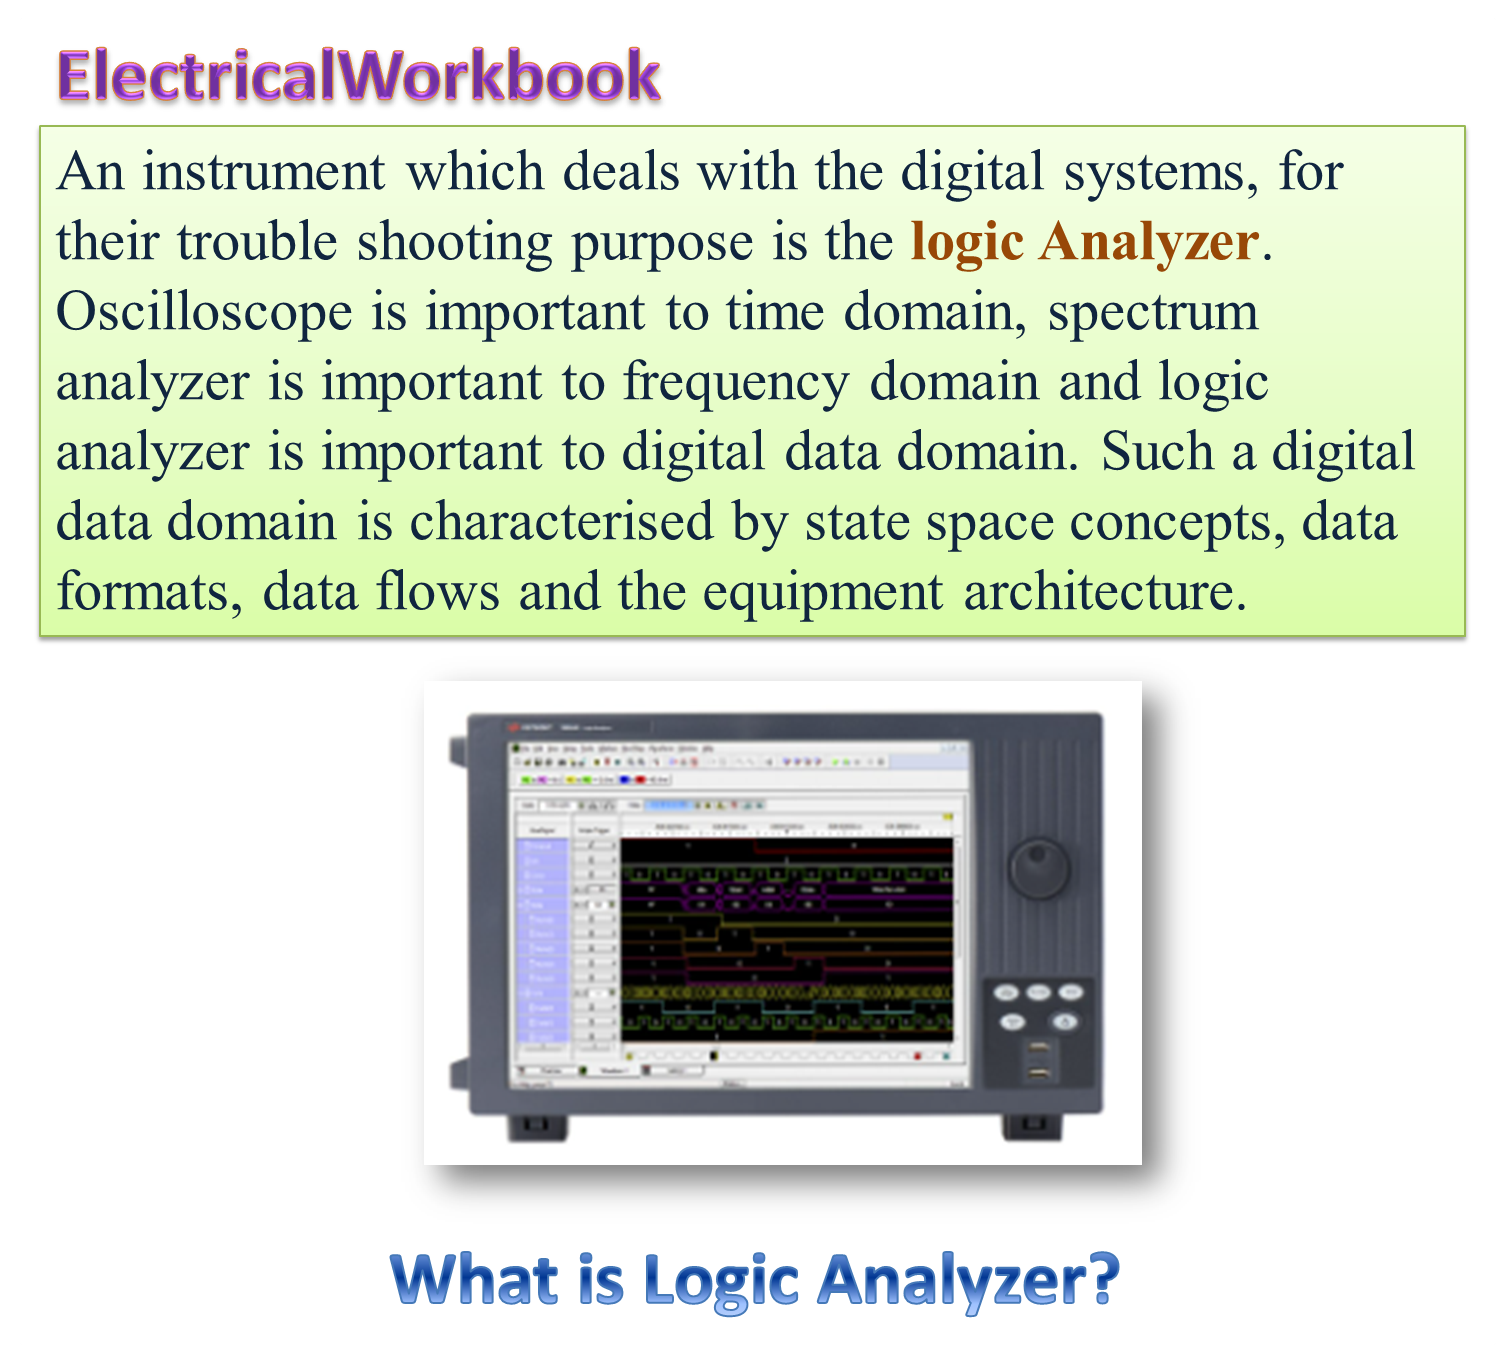 What is Logic Analyzer